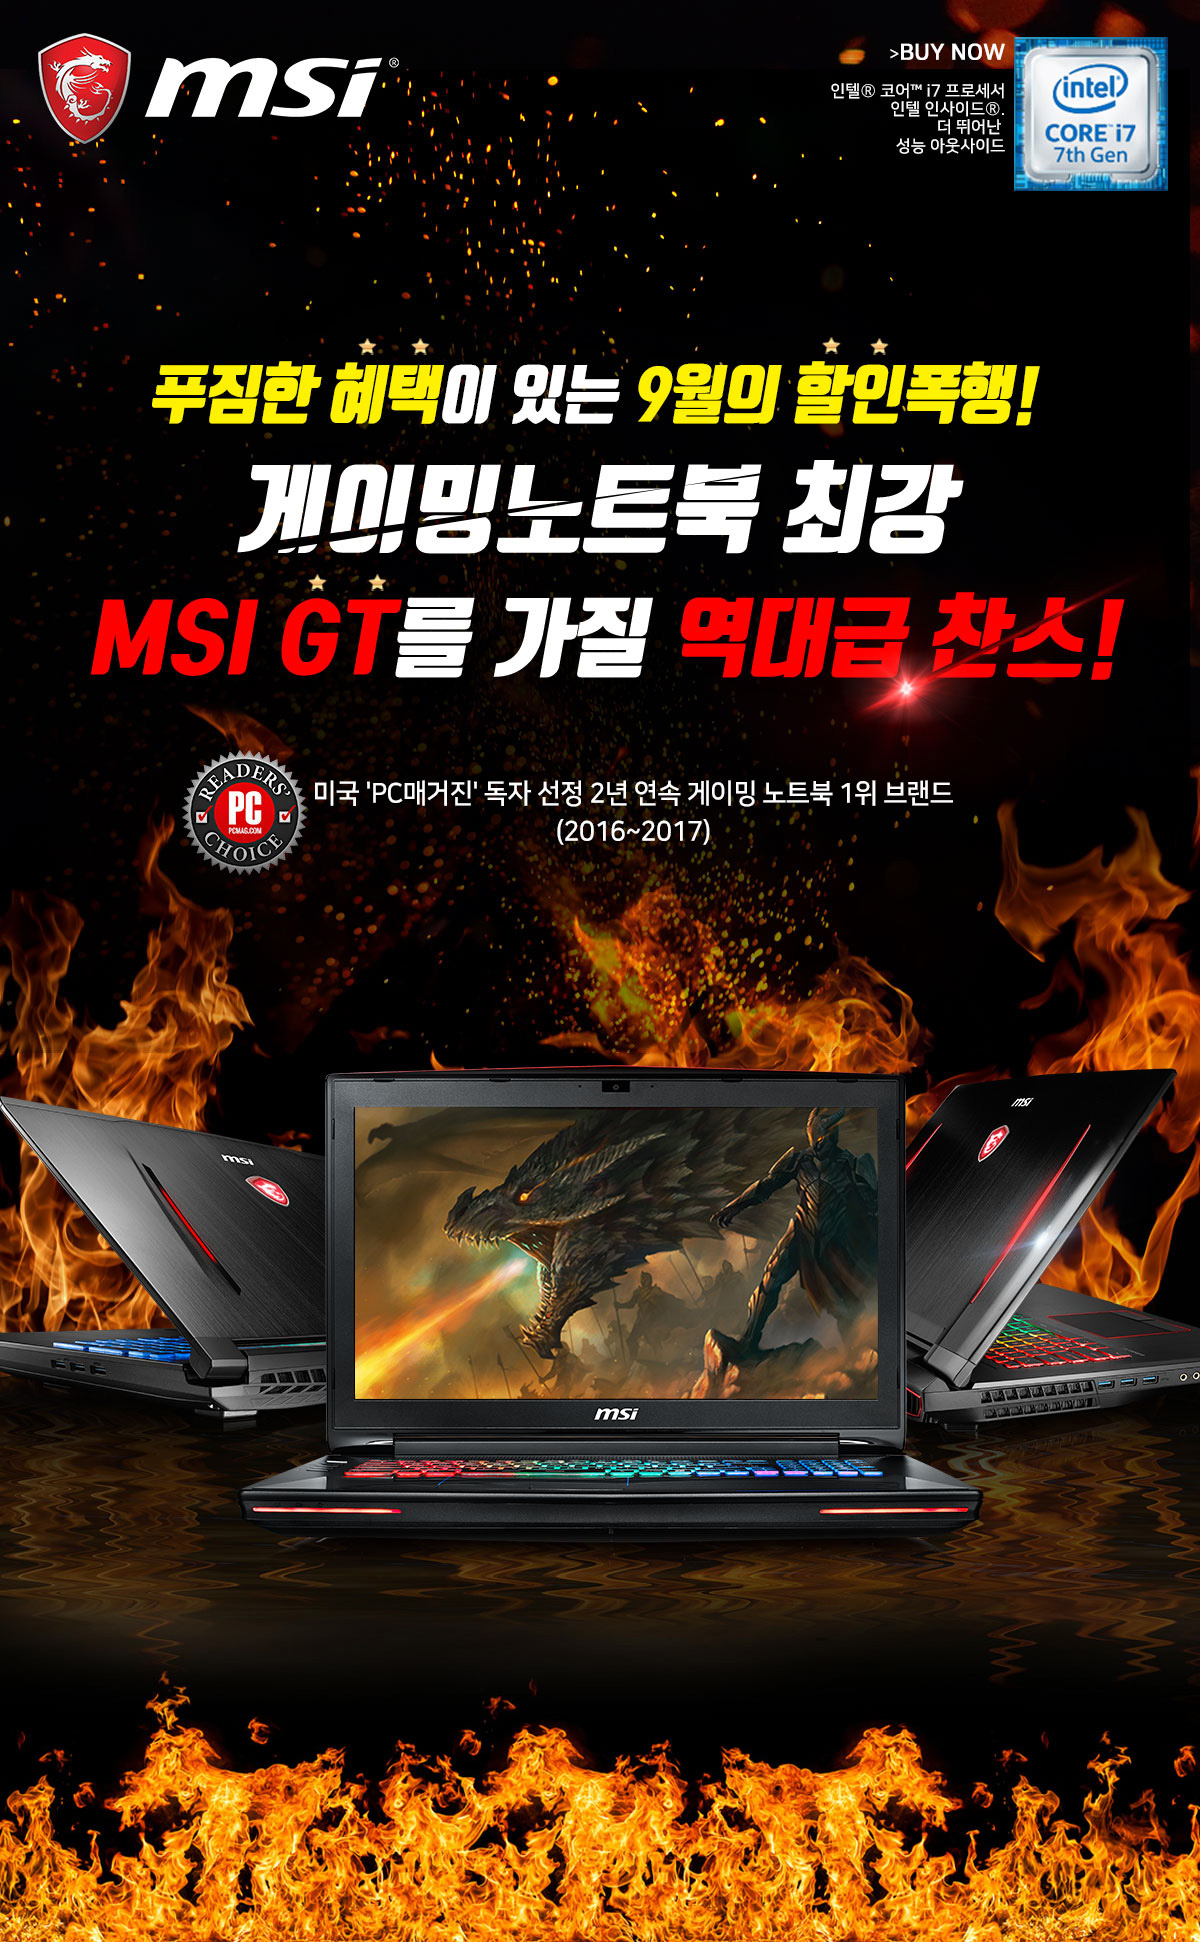 170906 11번가서 최대 25만원 할인받고 MSI GT 게이밍 노트북 구매하세요.jpg